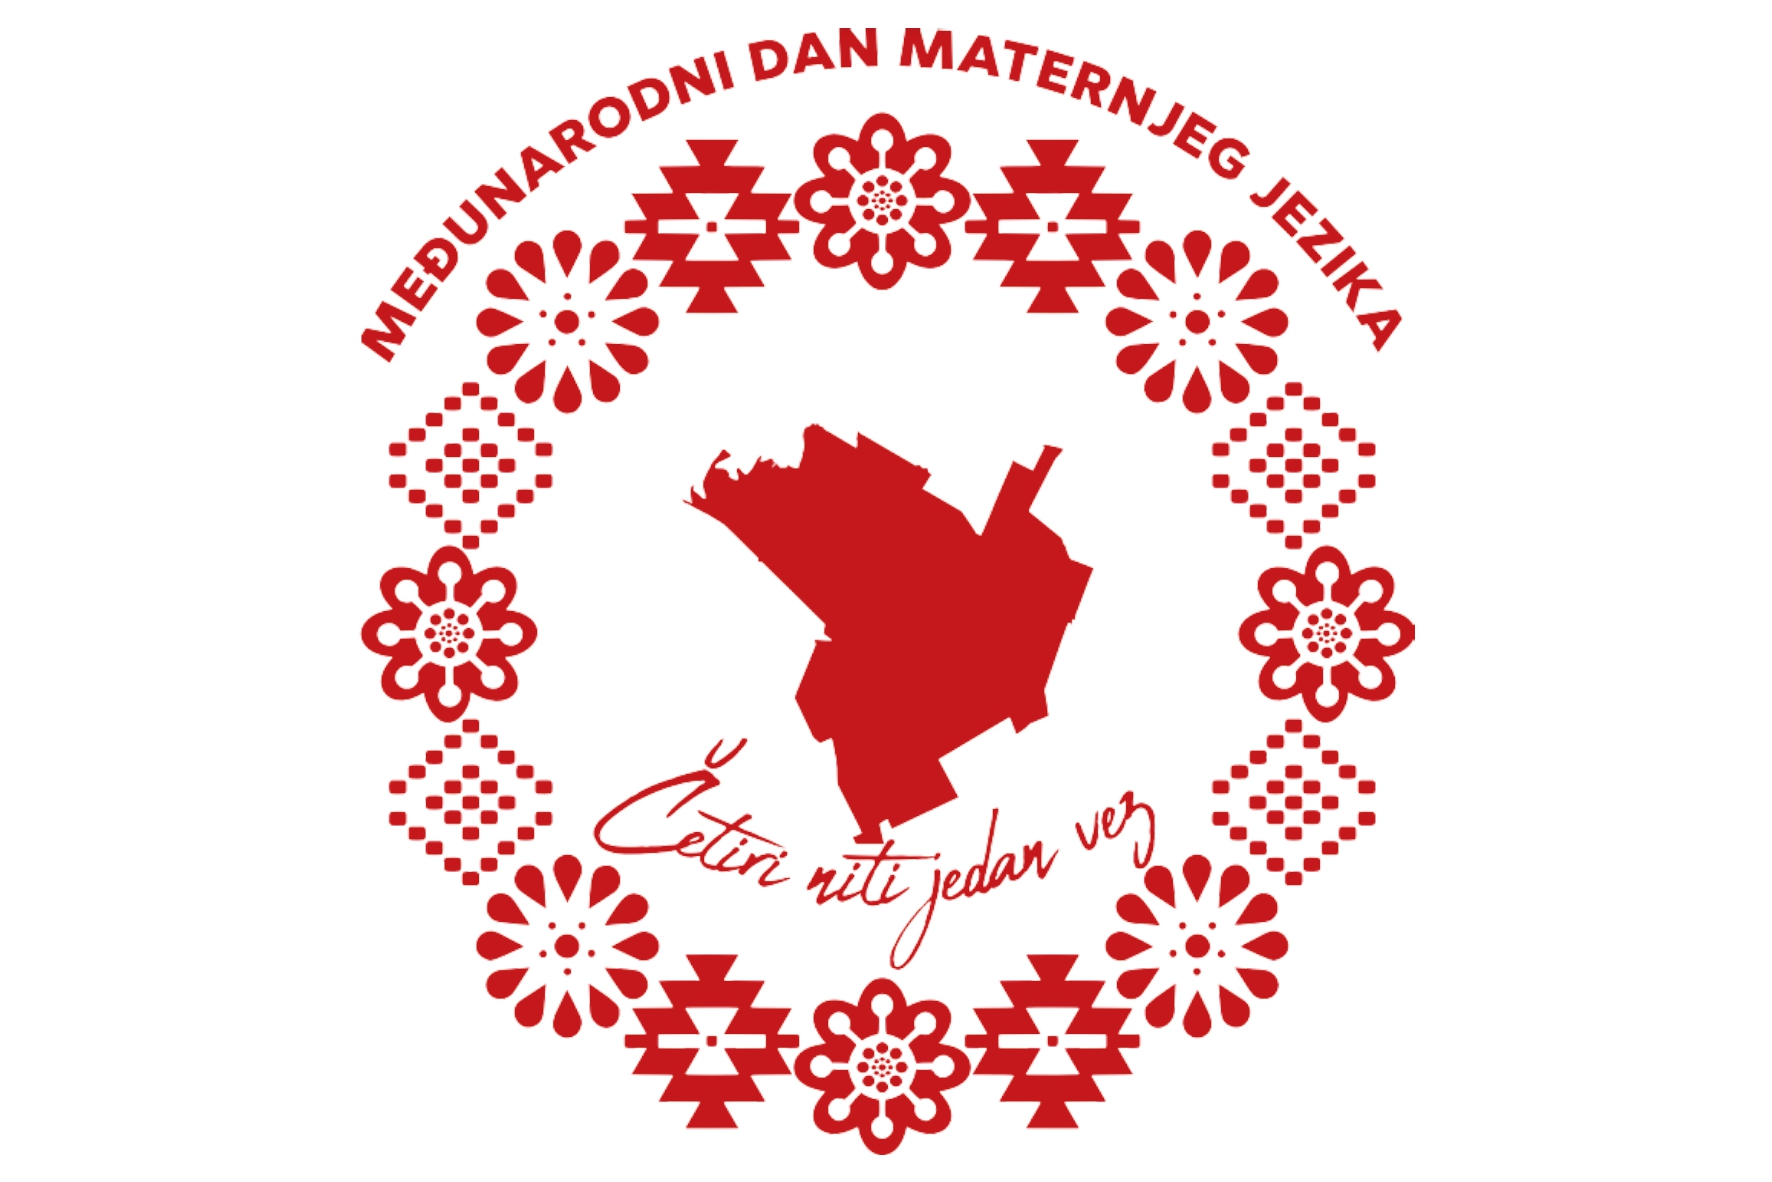 Međunarodni dan maternjeg jezika 21. februara u Kovačici